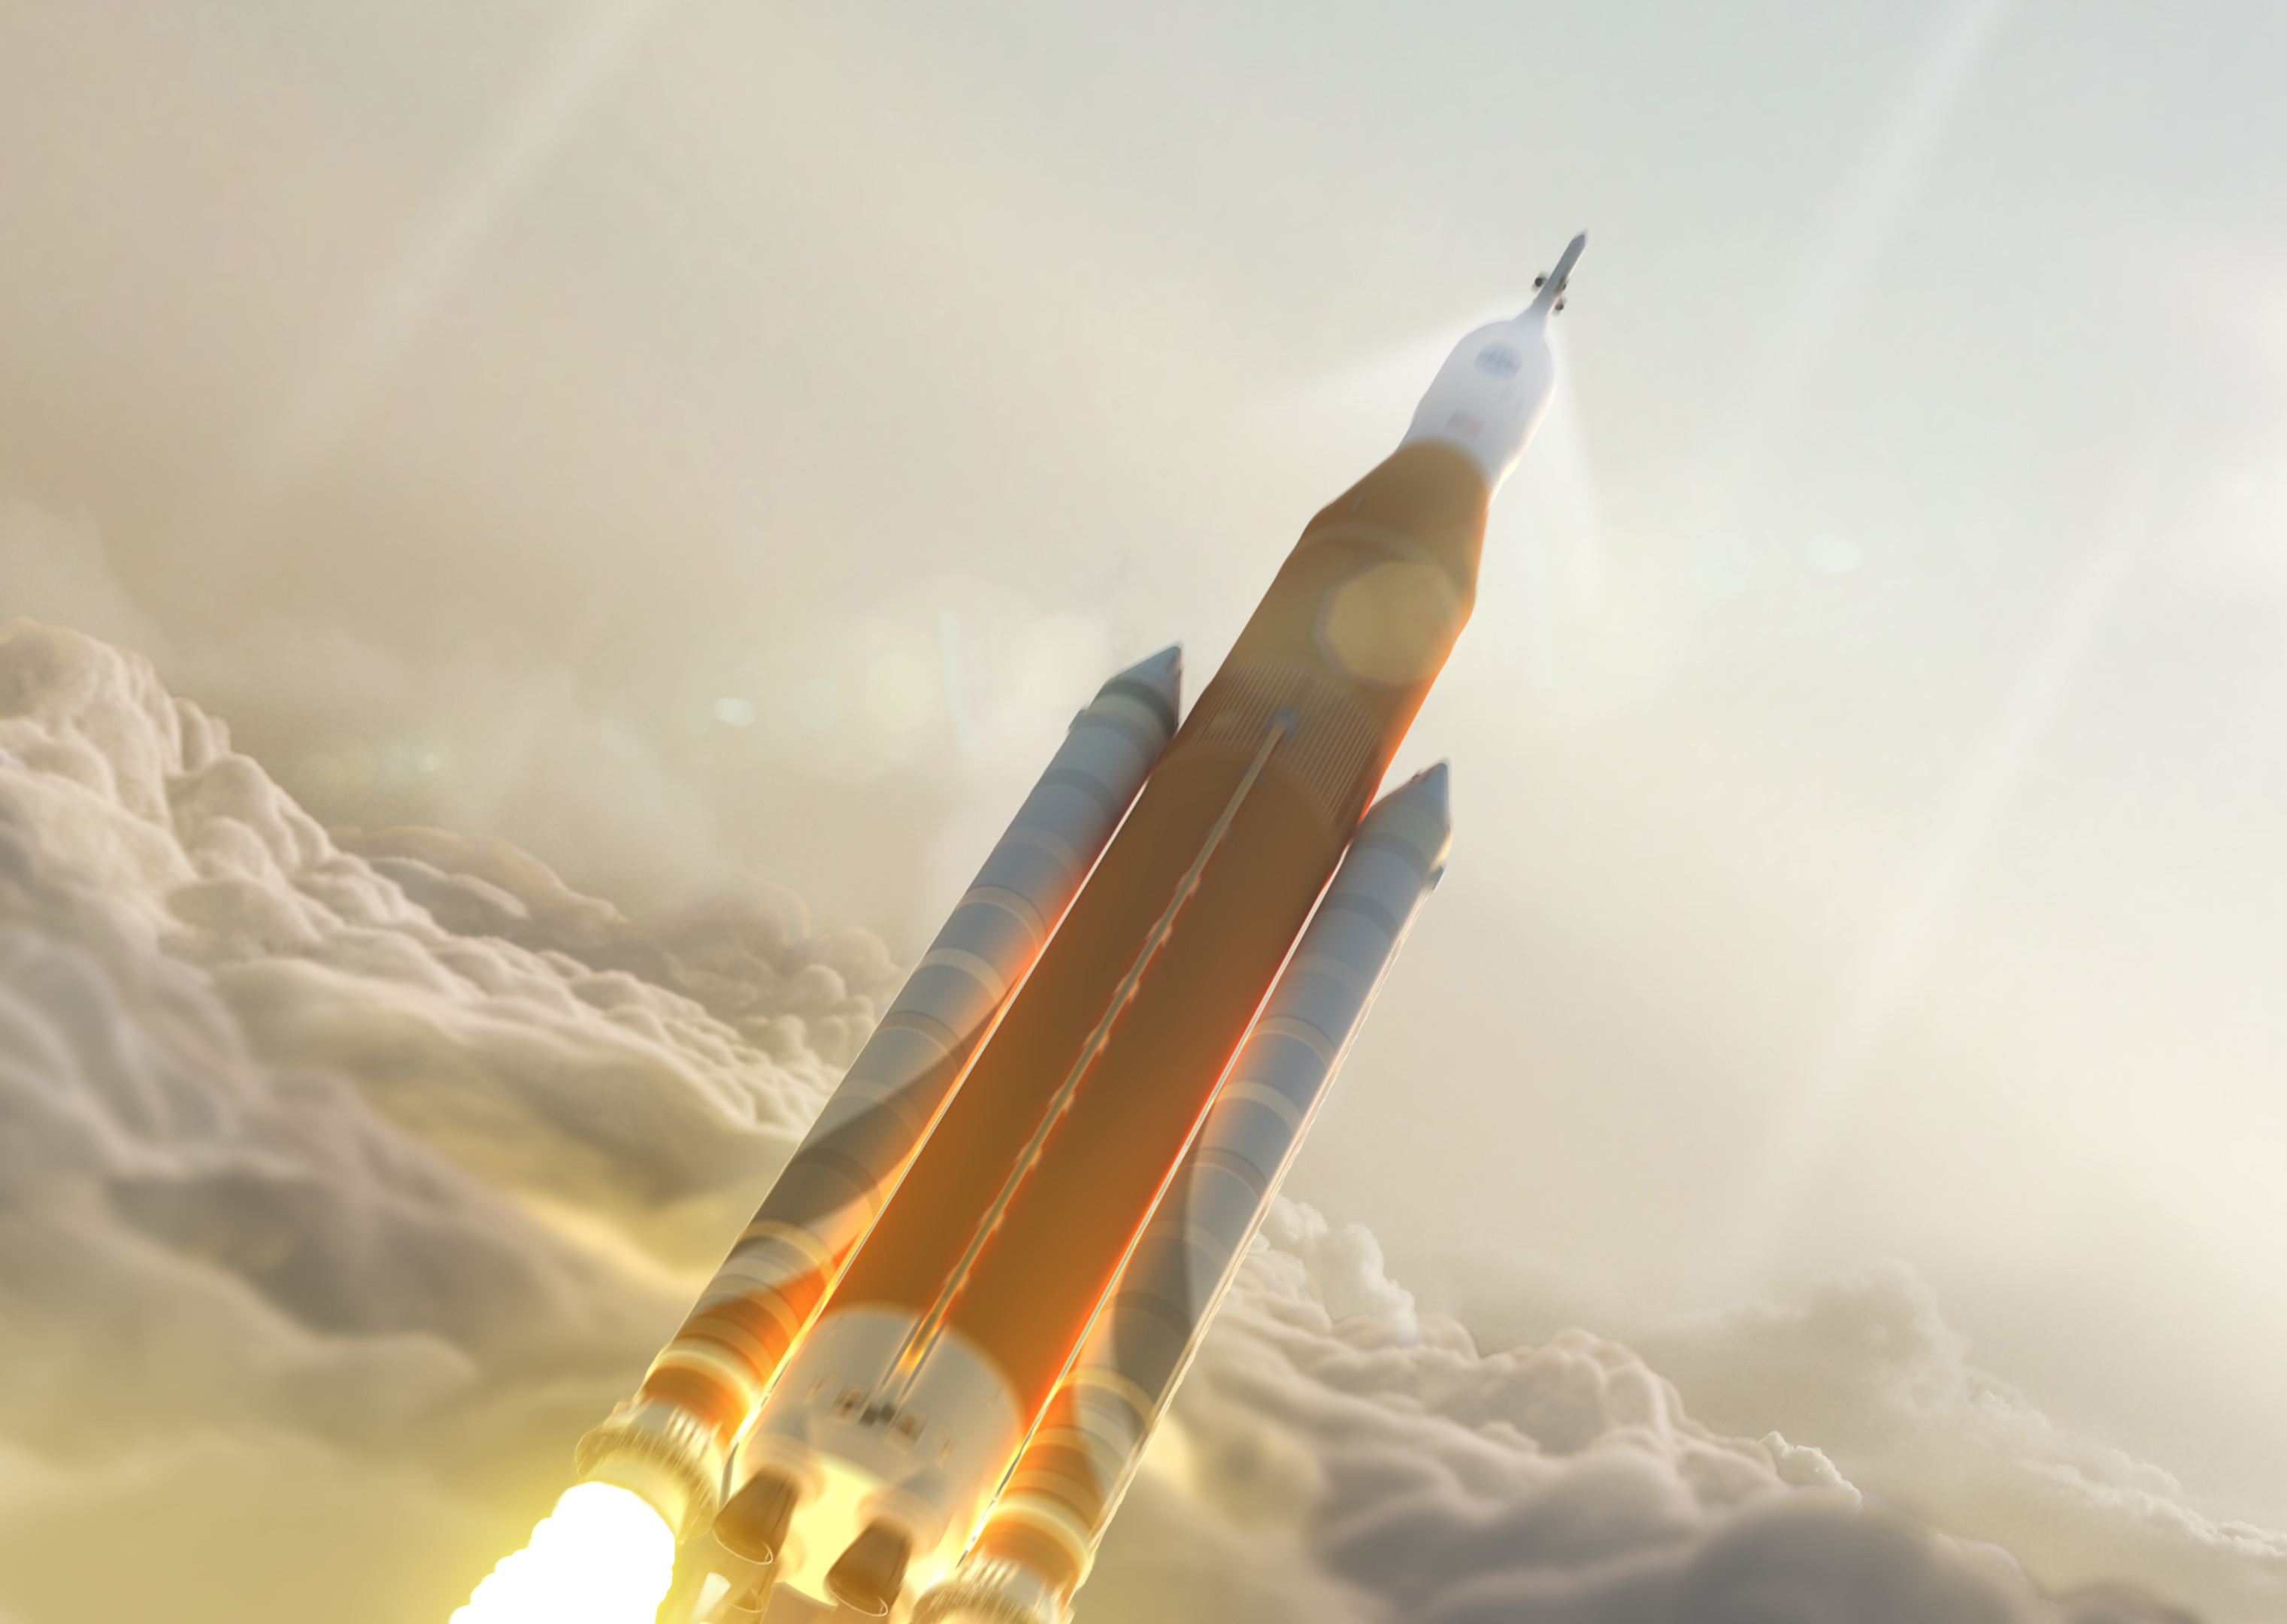 A Space Launch System tervezett óriásrakétája